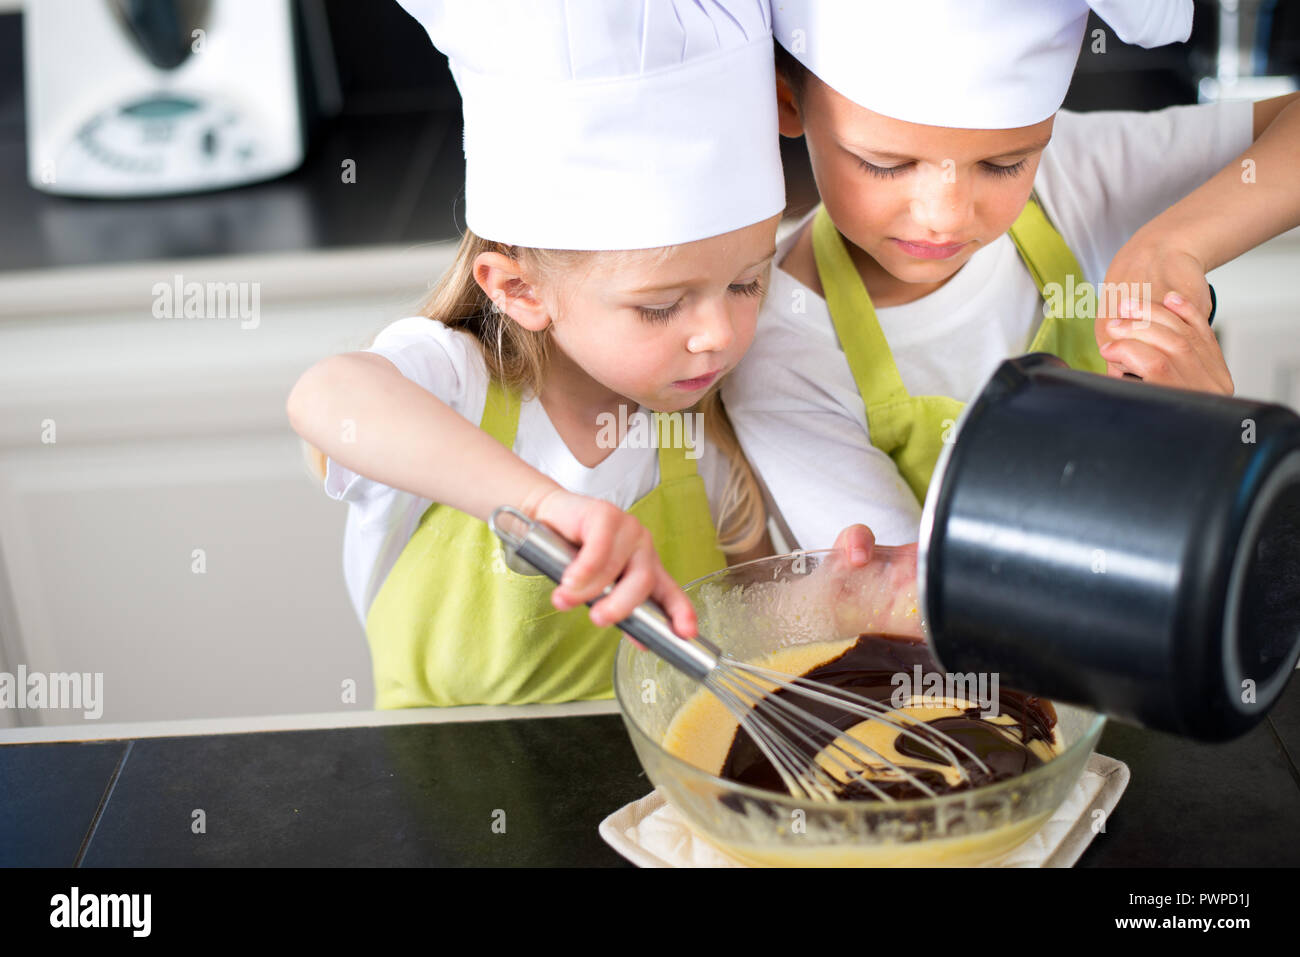 Zwei junge Kinder glückliche Kinder, Junge und Mädchen Familie mit Schürze und Koch hat die Vorbereitung lustig Cookies in der Küche zu Hause. Stockfoto